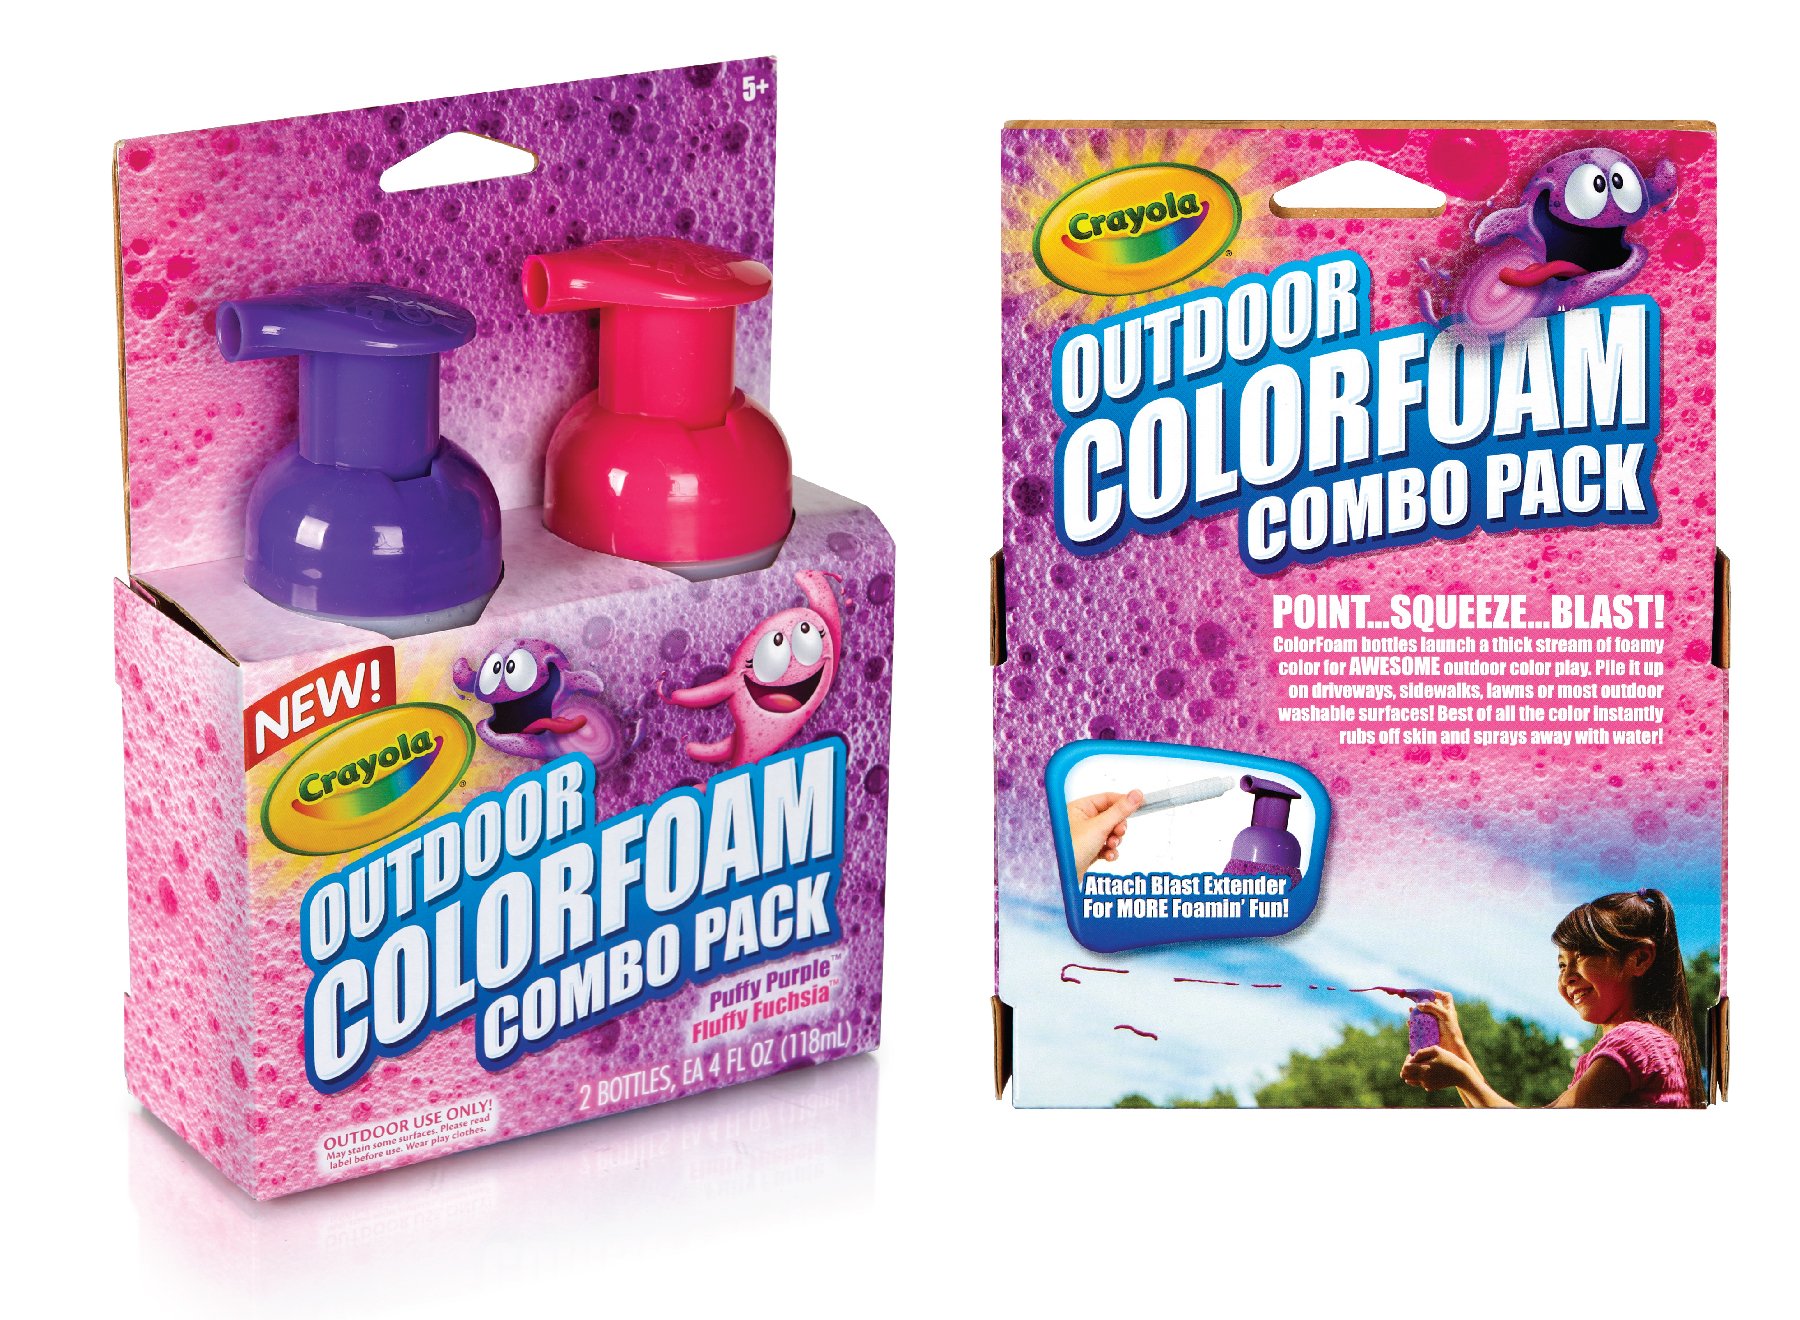 Outdoor_Colorfoam Combo Pack.jpg